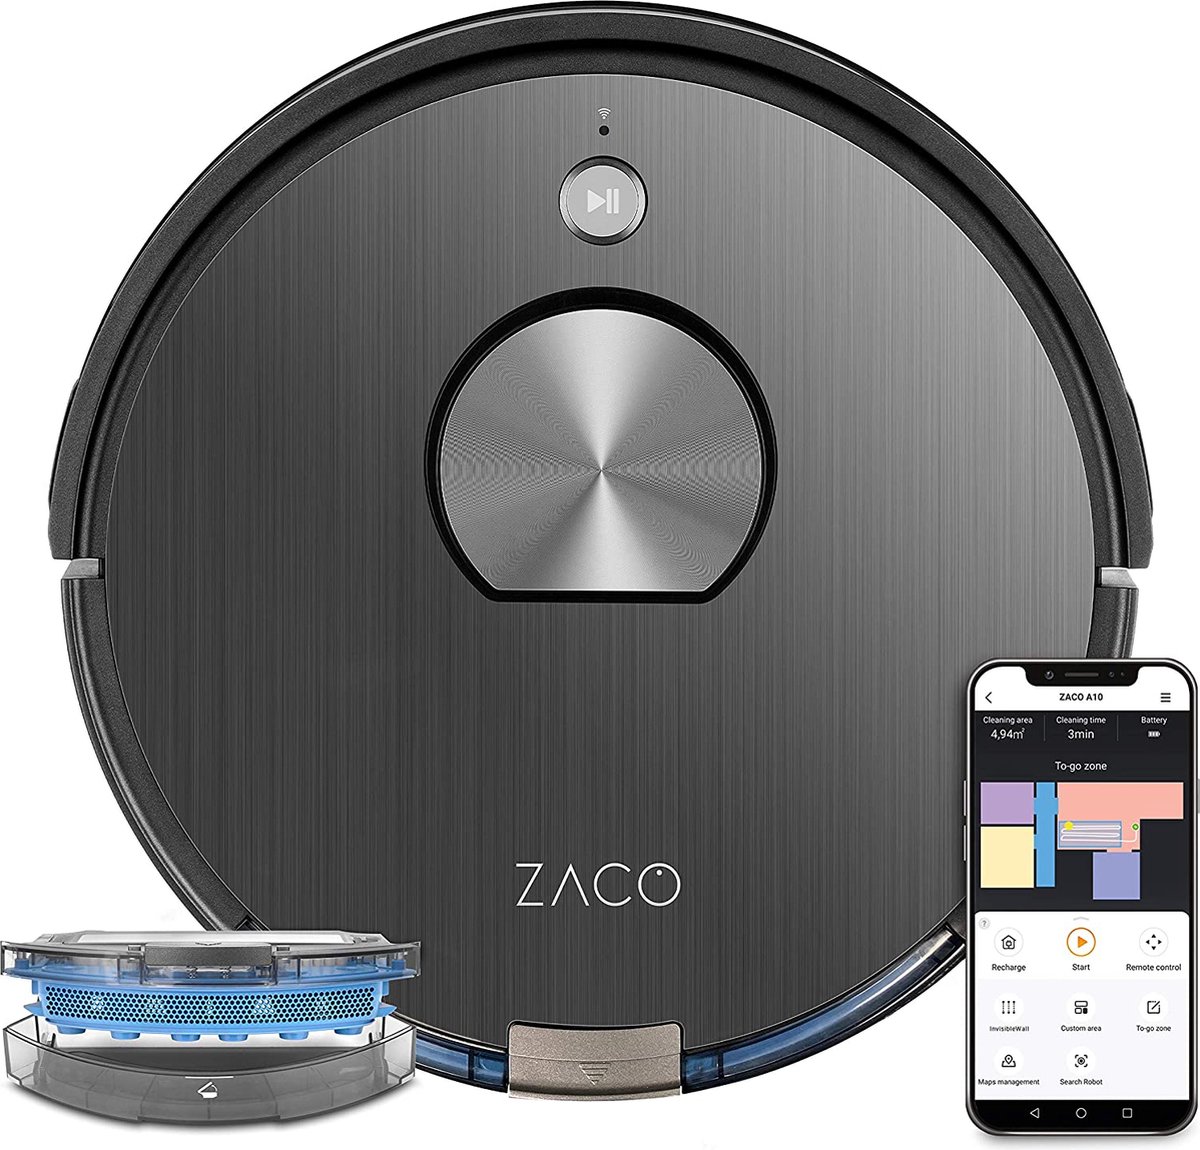 YSR - Zaco A10 Robotstofzuiger Met Dweilfunctie (Nieuw 2021), 360° Lasernavigatie, Alexa & Google Home-Bediening, Mapping, No-Go Zones, Timer, Voor Harde Vloeren En Tapijt, Tot 2 Uur Zuigen Of Vegen, Grijs